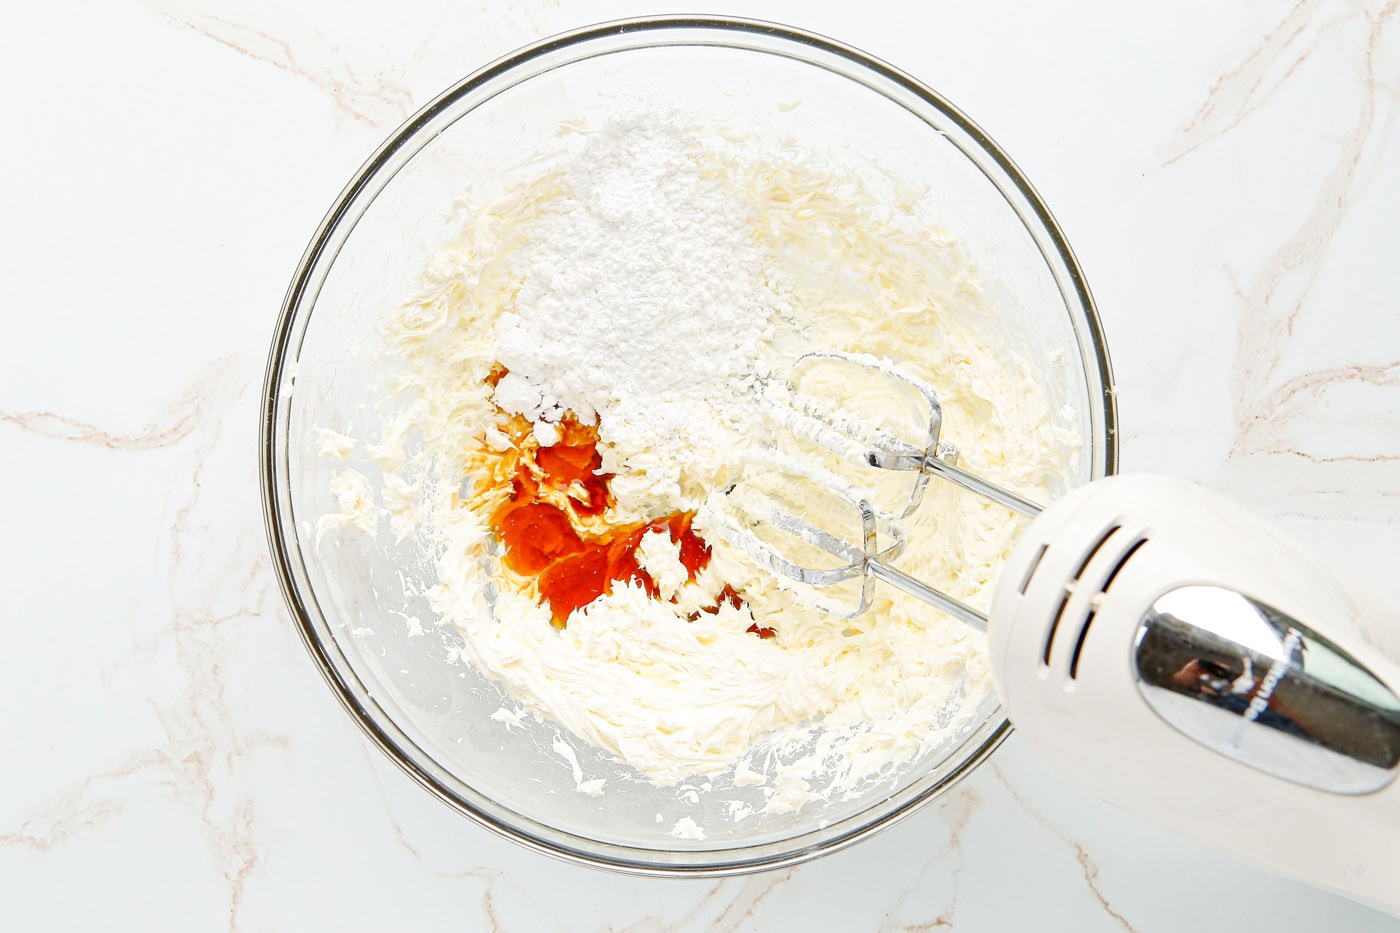 powdered sugar, heavy cream, and vanilla added to cream cheese mixture